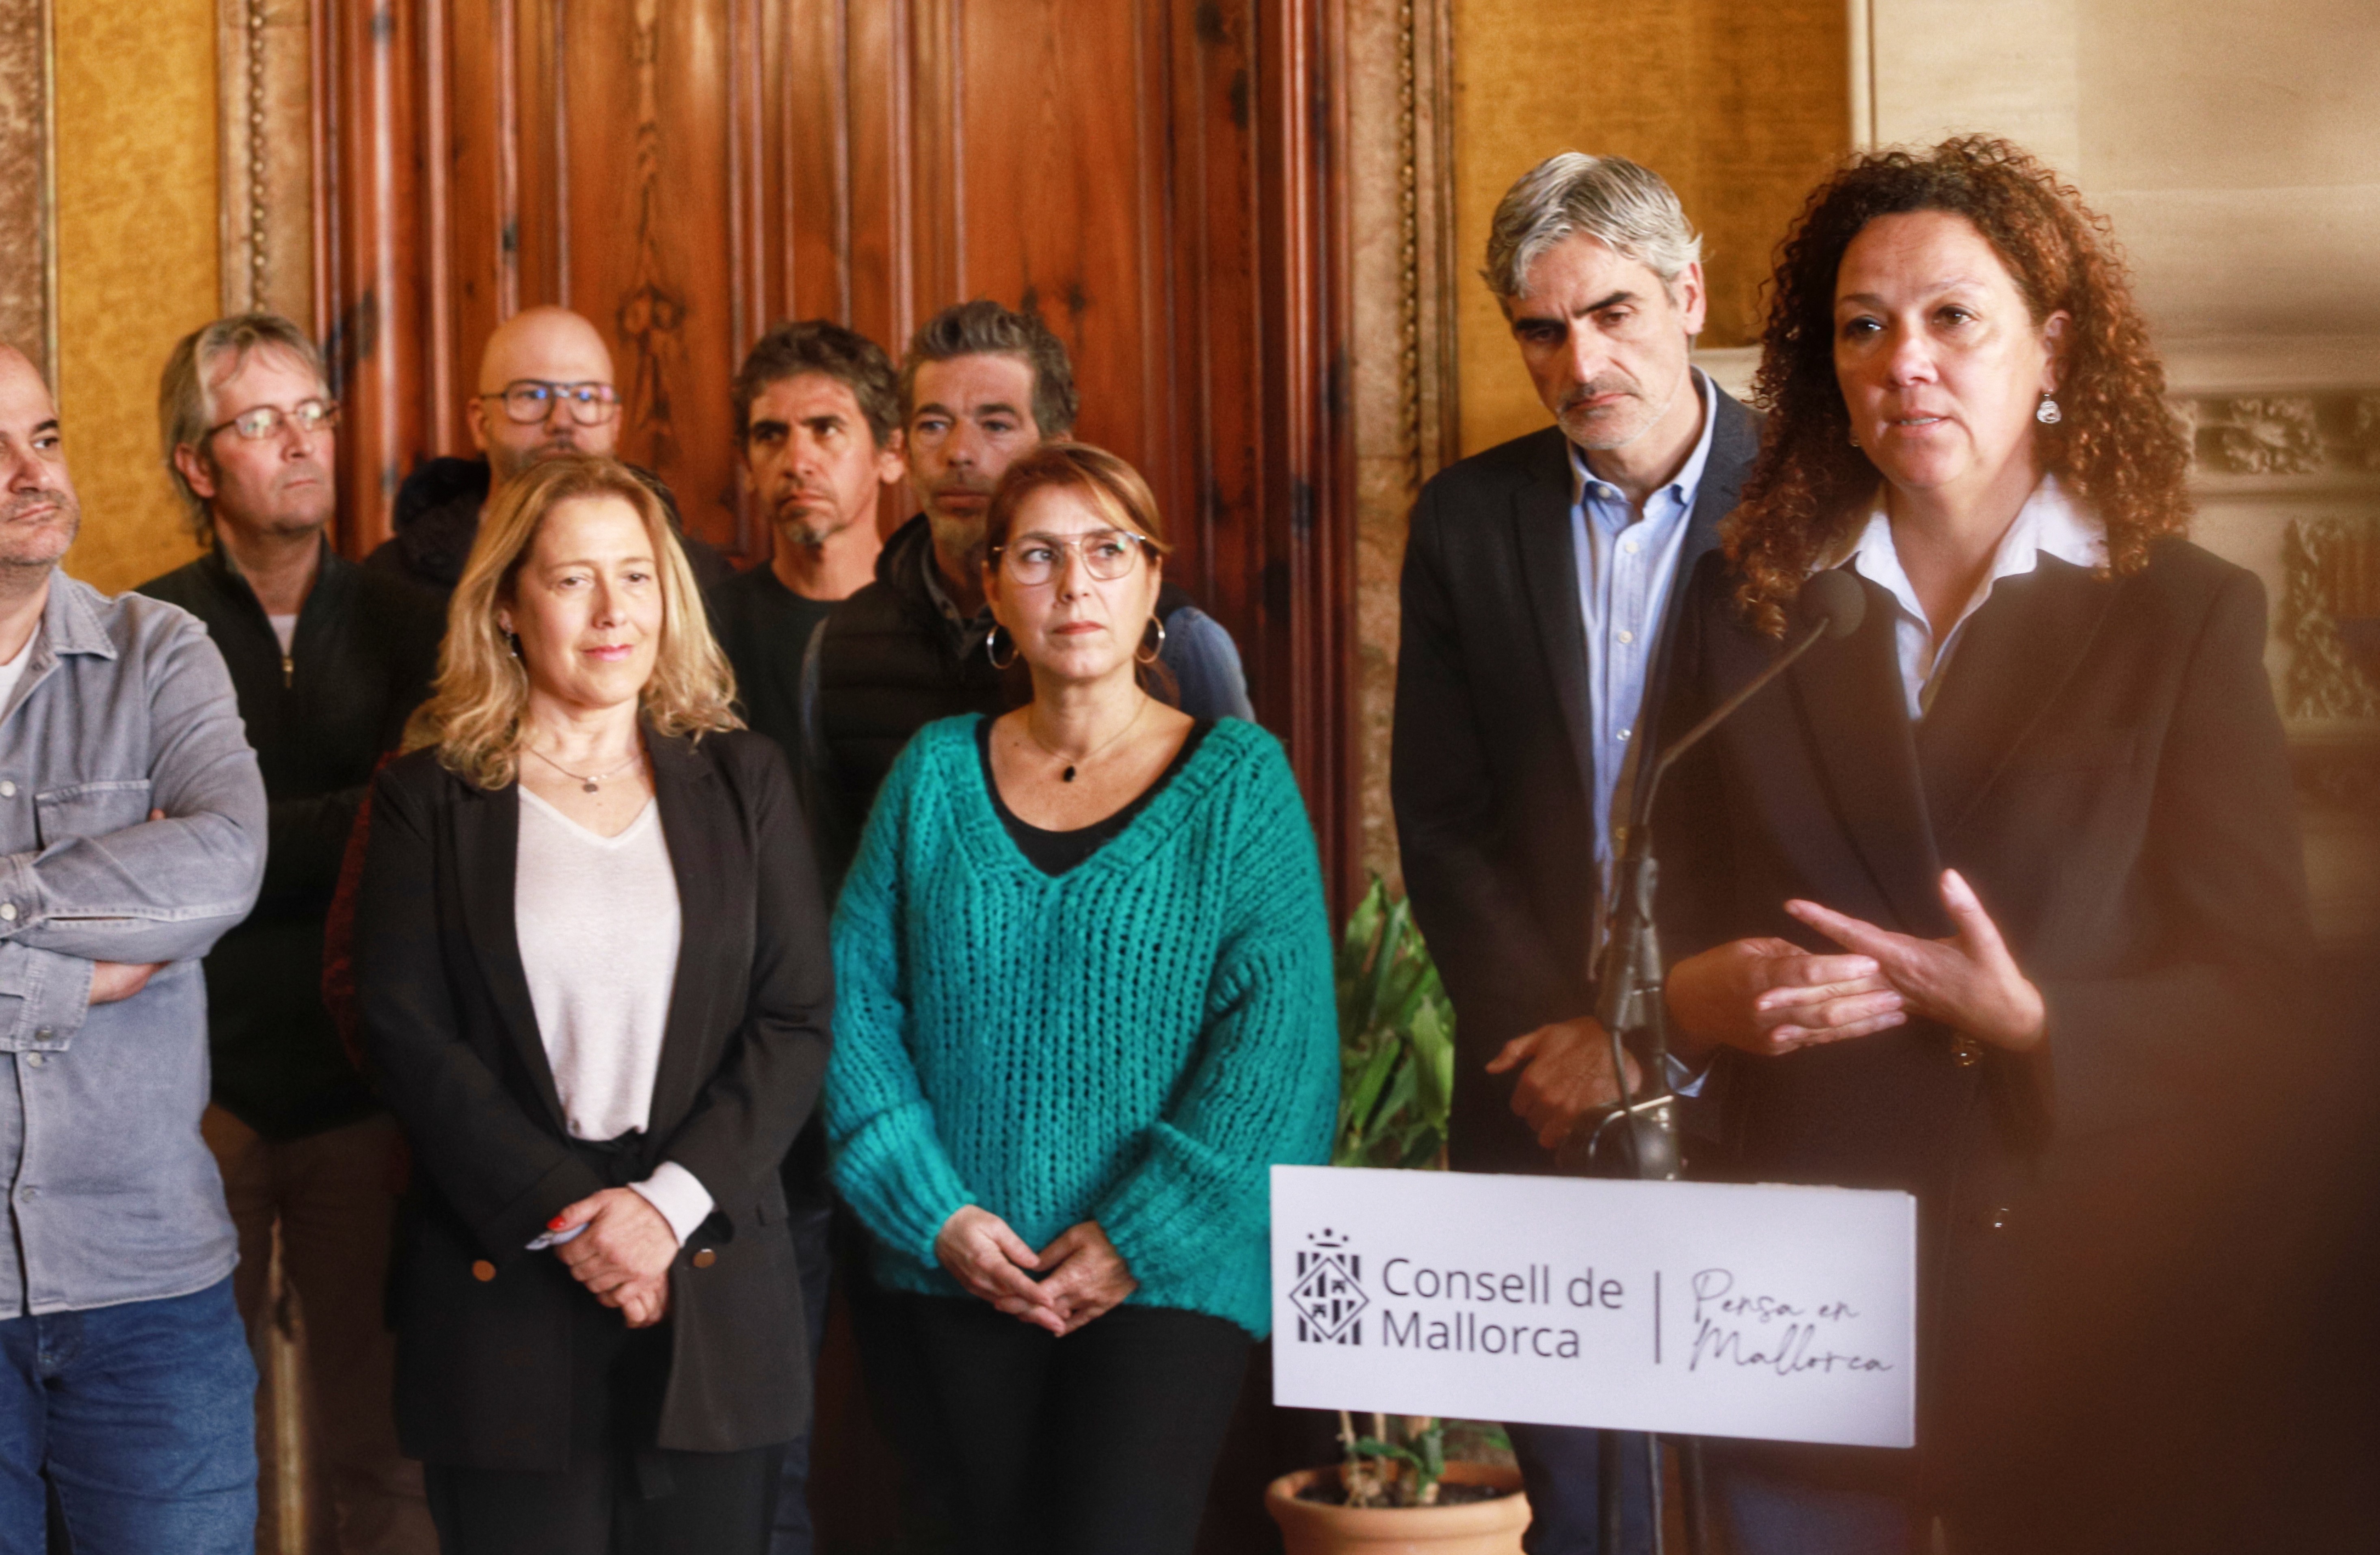 La presidenta del Consell de Mallorca, Catalina Cladera, explicant l'acord